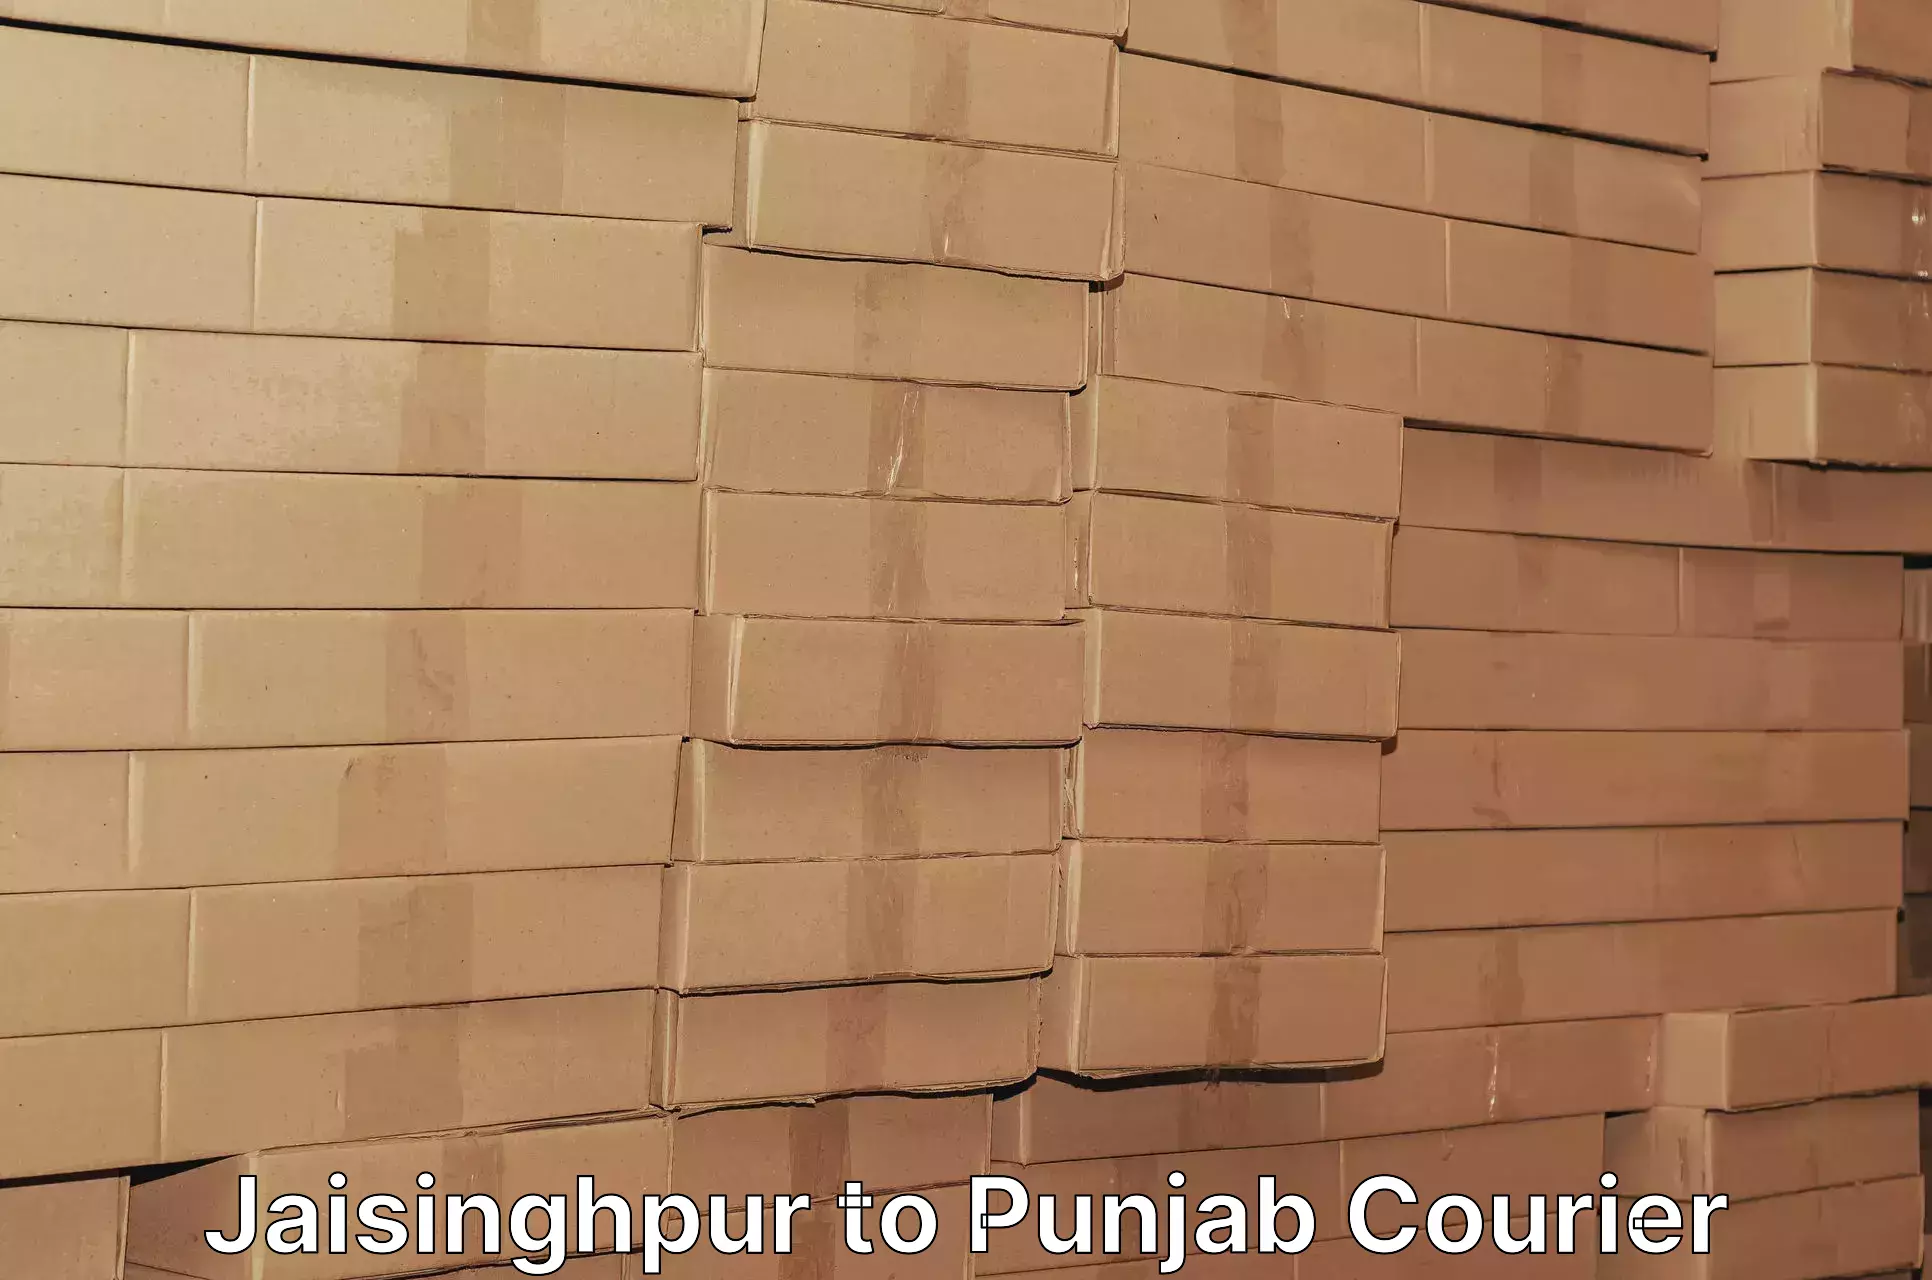 Weekend courier service Jaisinghpur to Firozpur